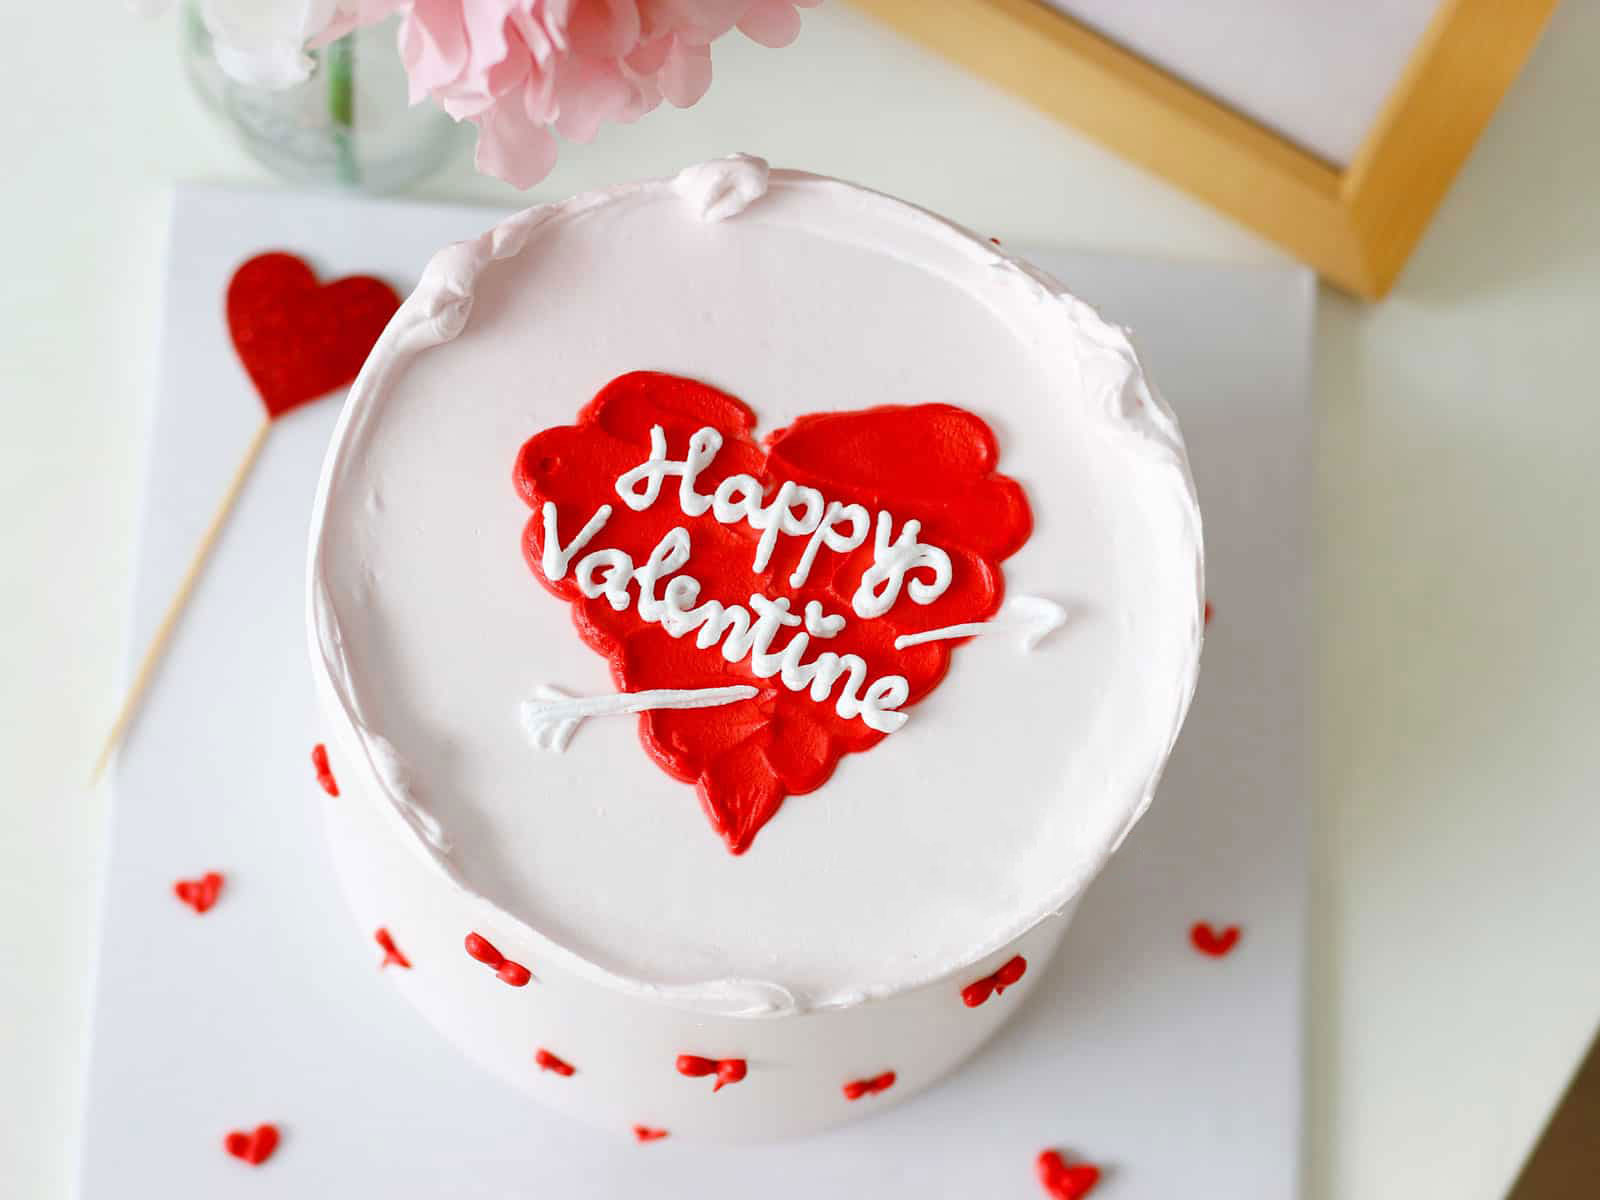 Mẫu bánh kem dành cho ngày Valentine 142 ngày lễ tình nhân